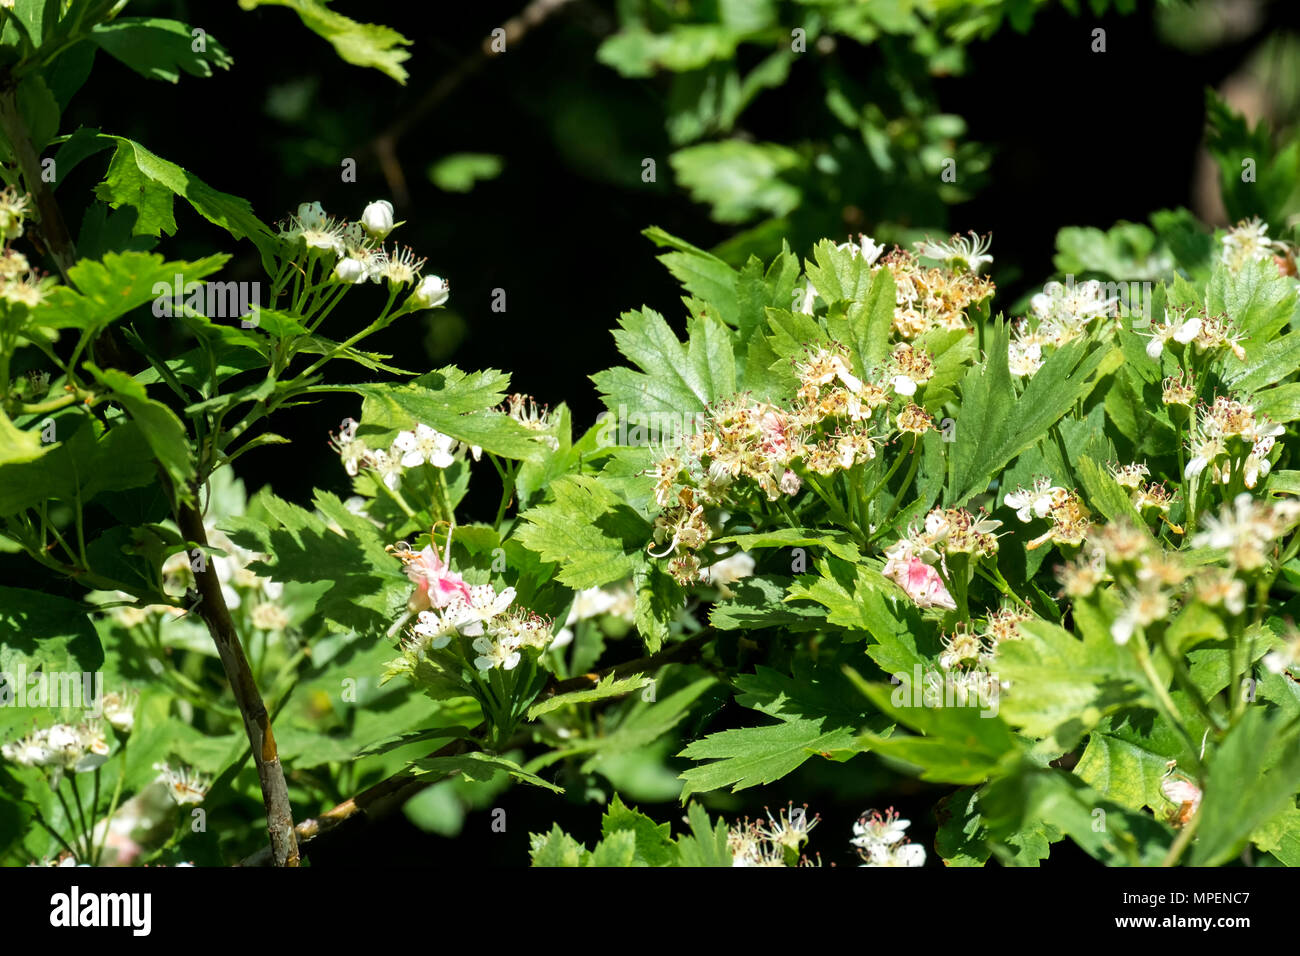 Blühende Weißdorn. Blumen und Blätter von Weißdorn (Crataegus) Stockfoto